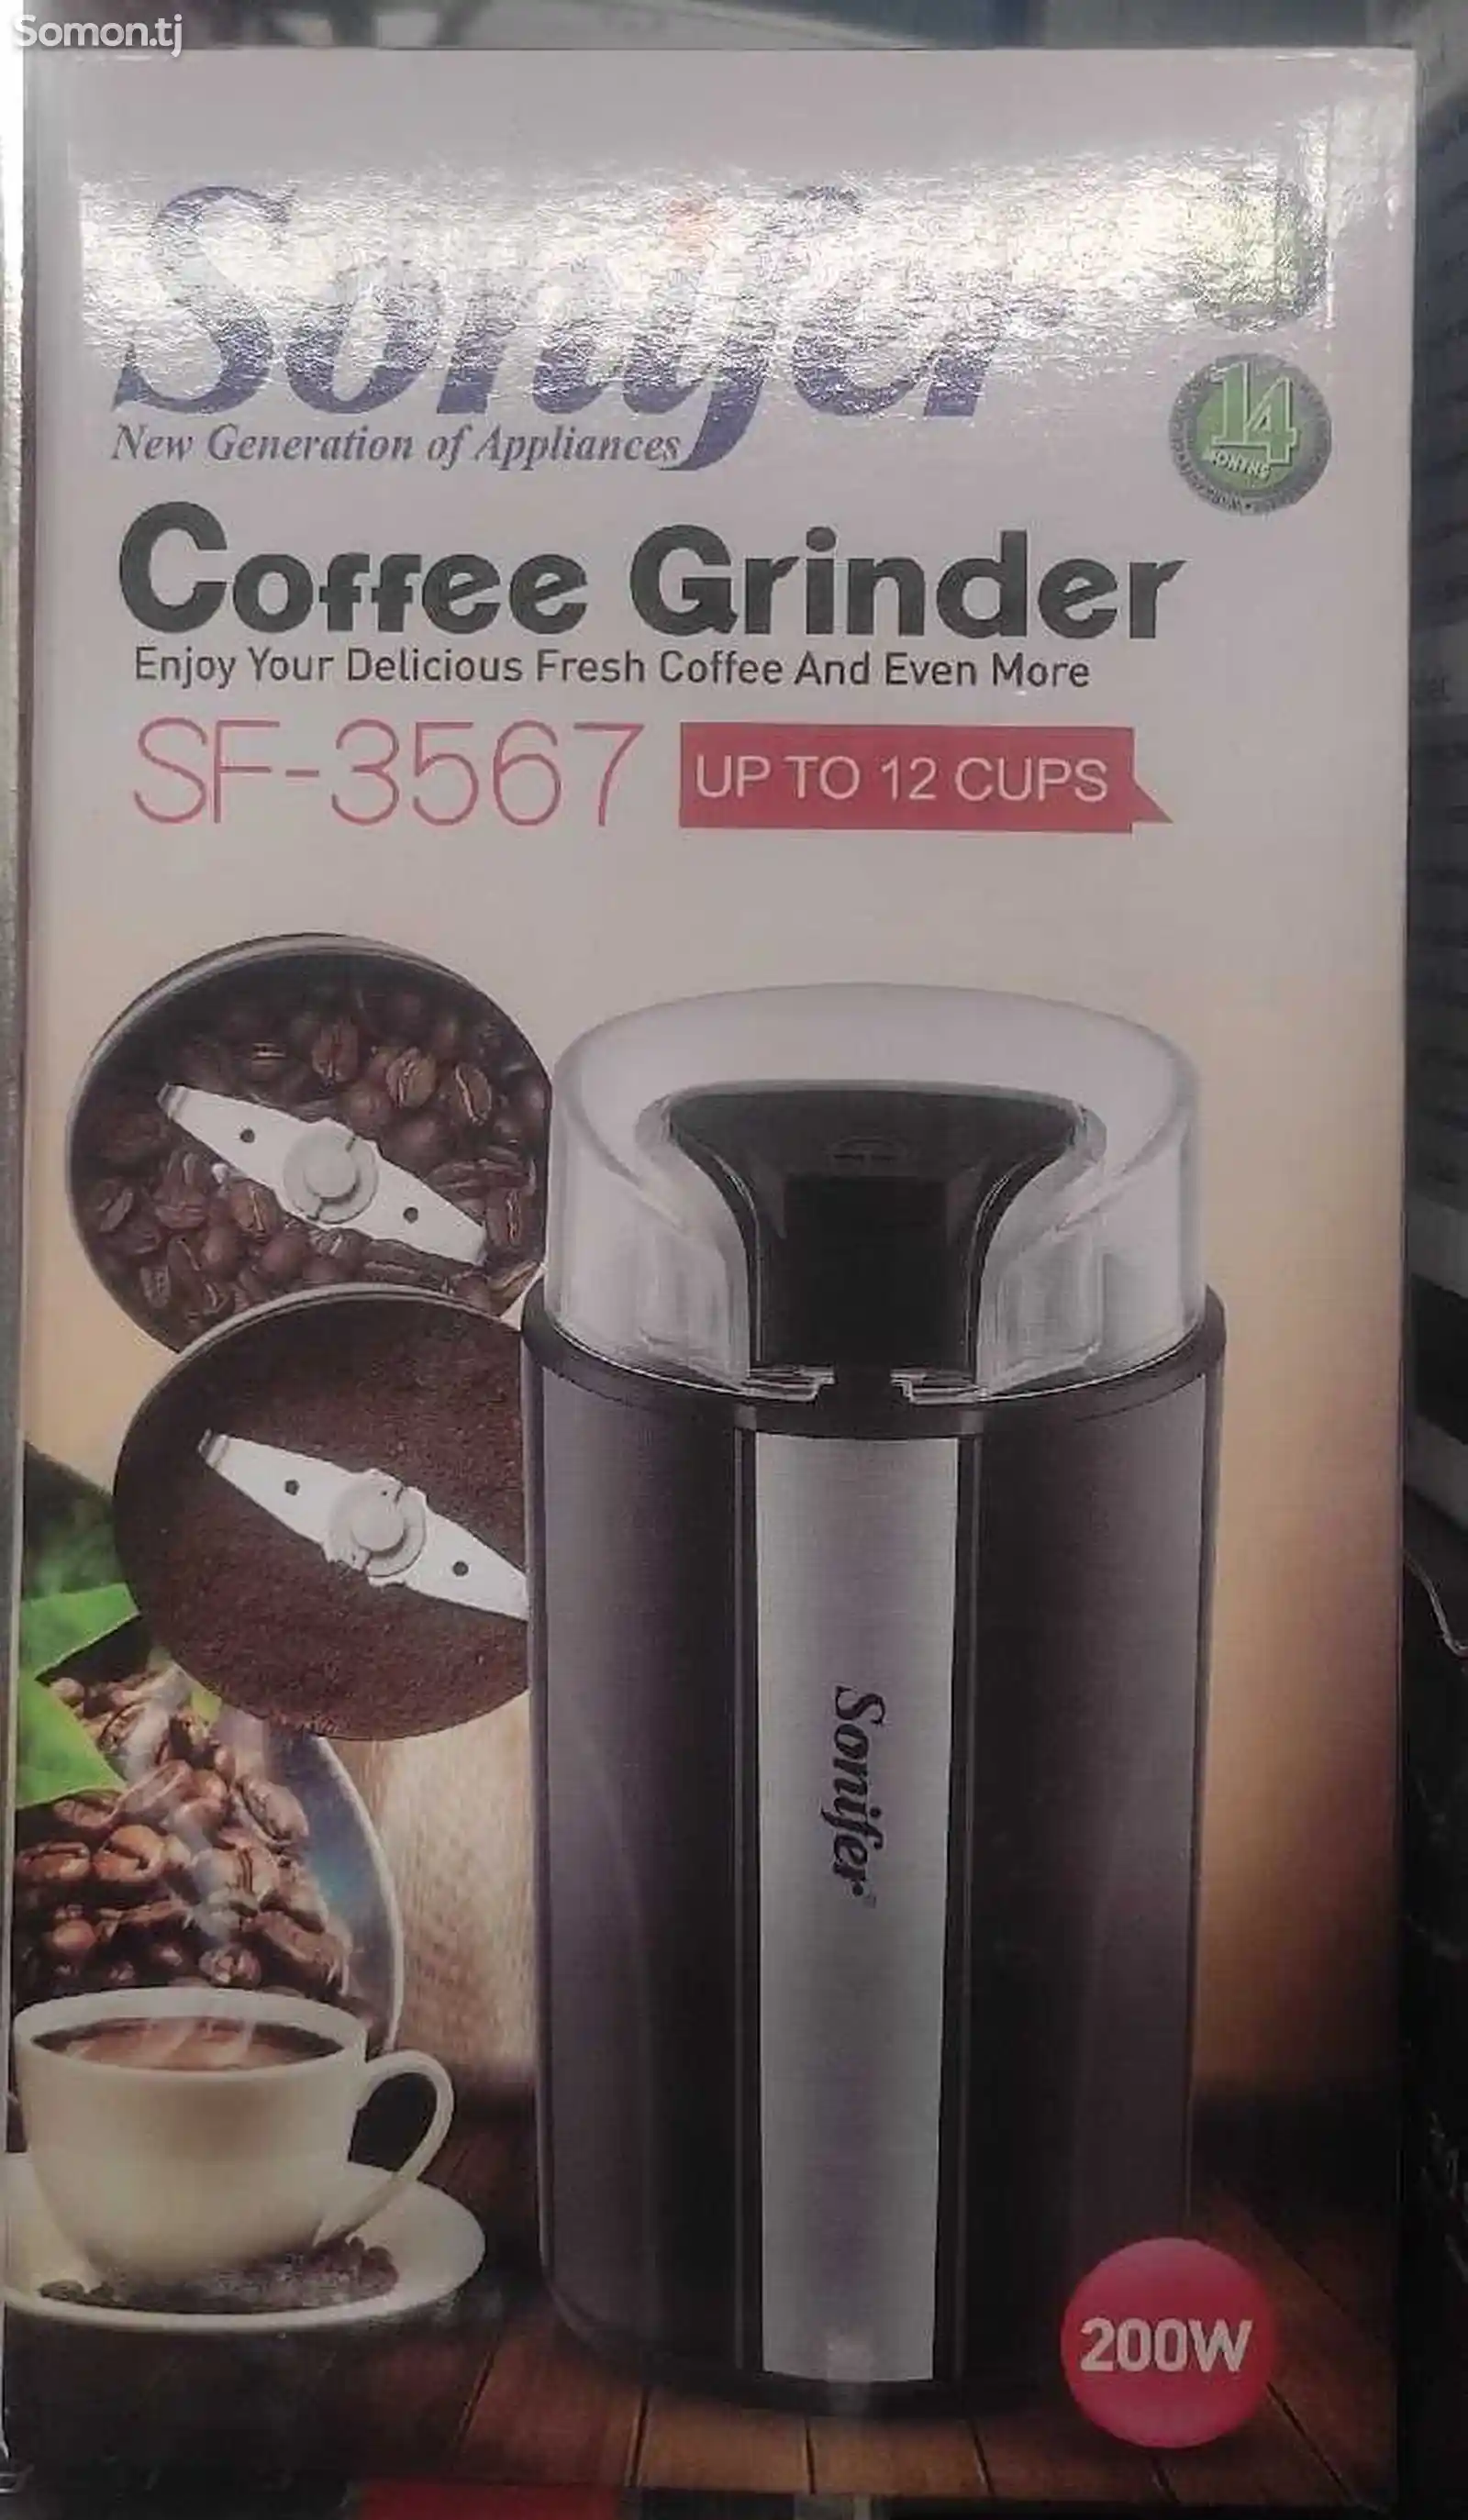 Кофемолка Sonifer